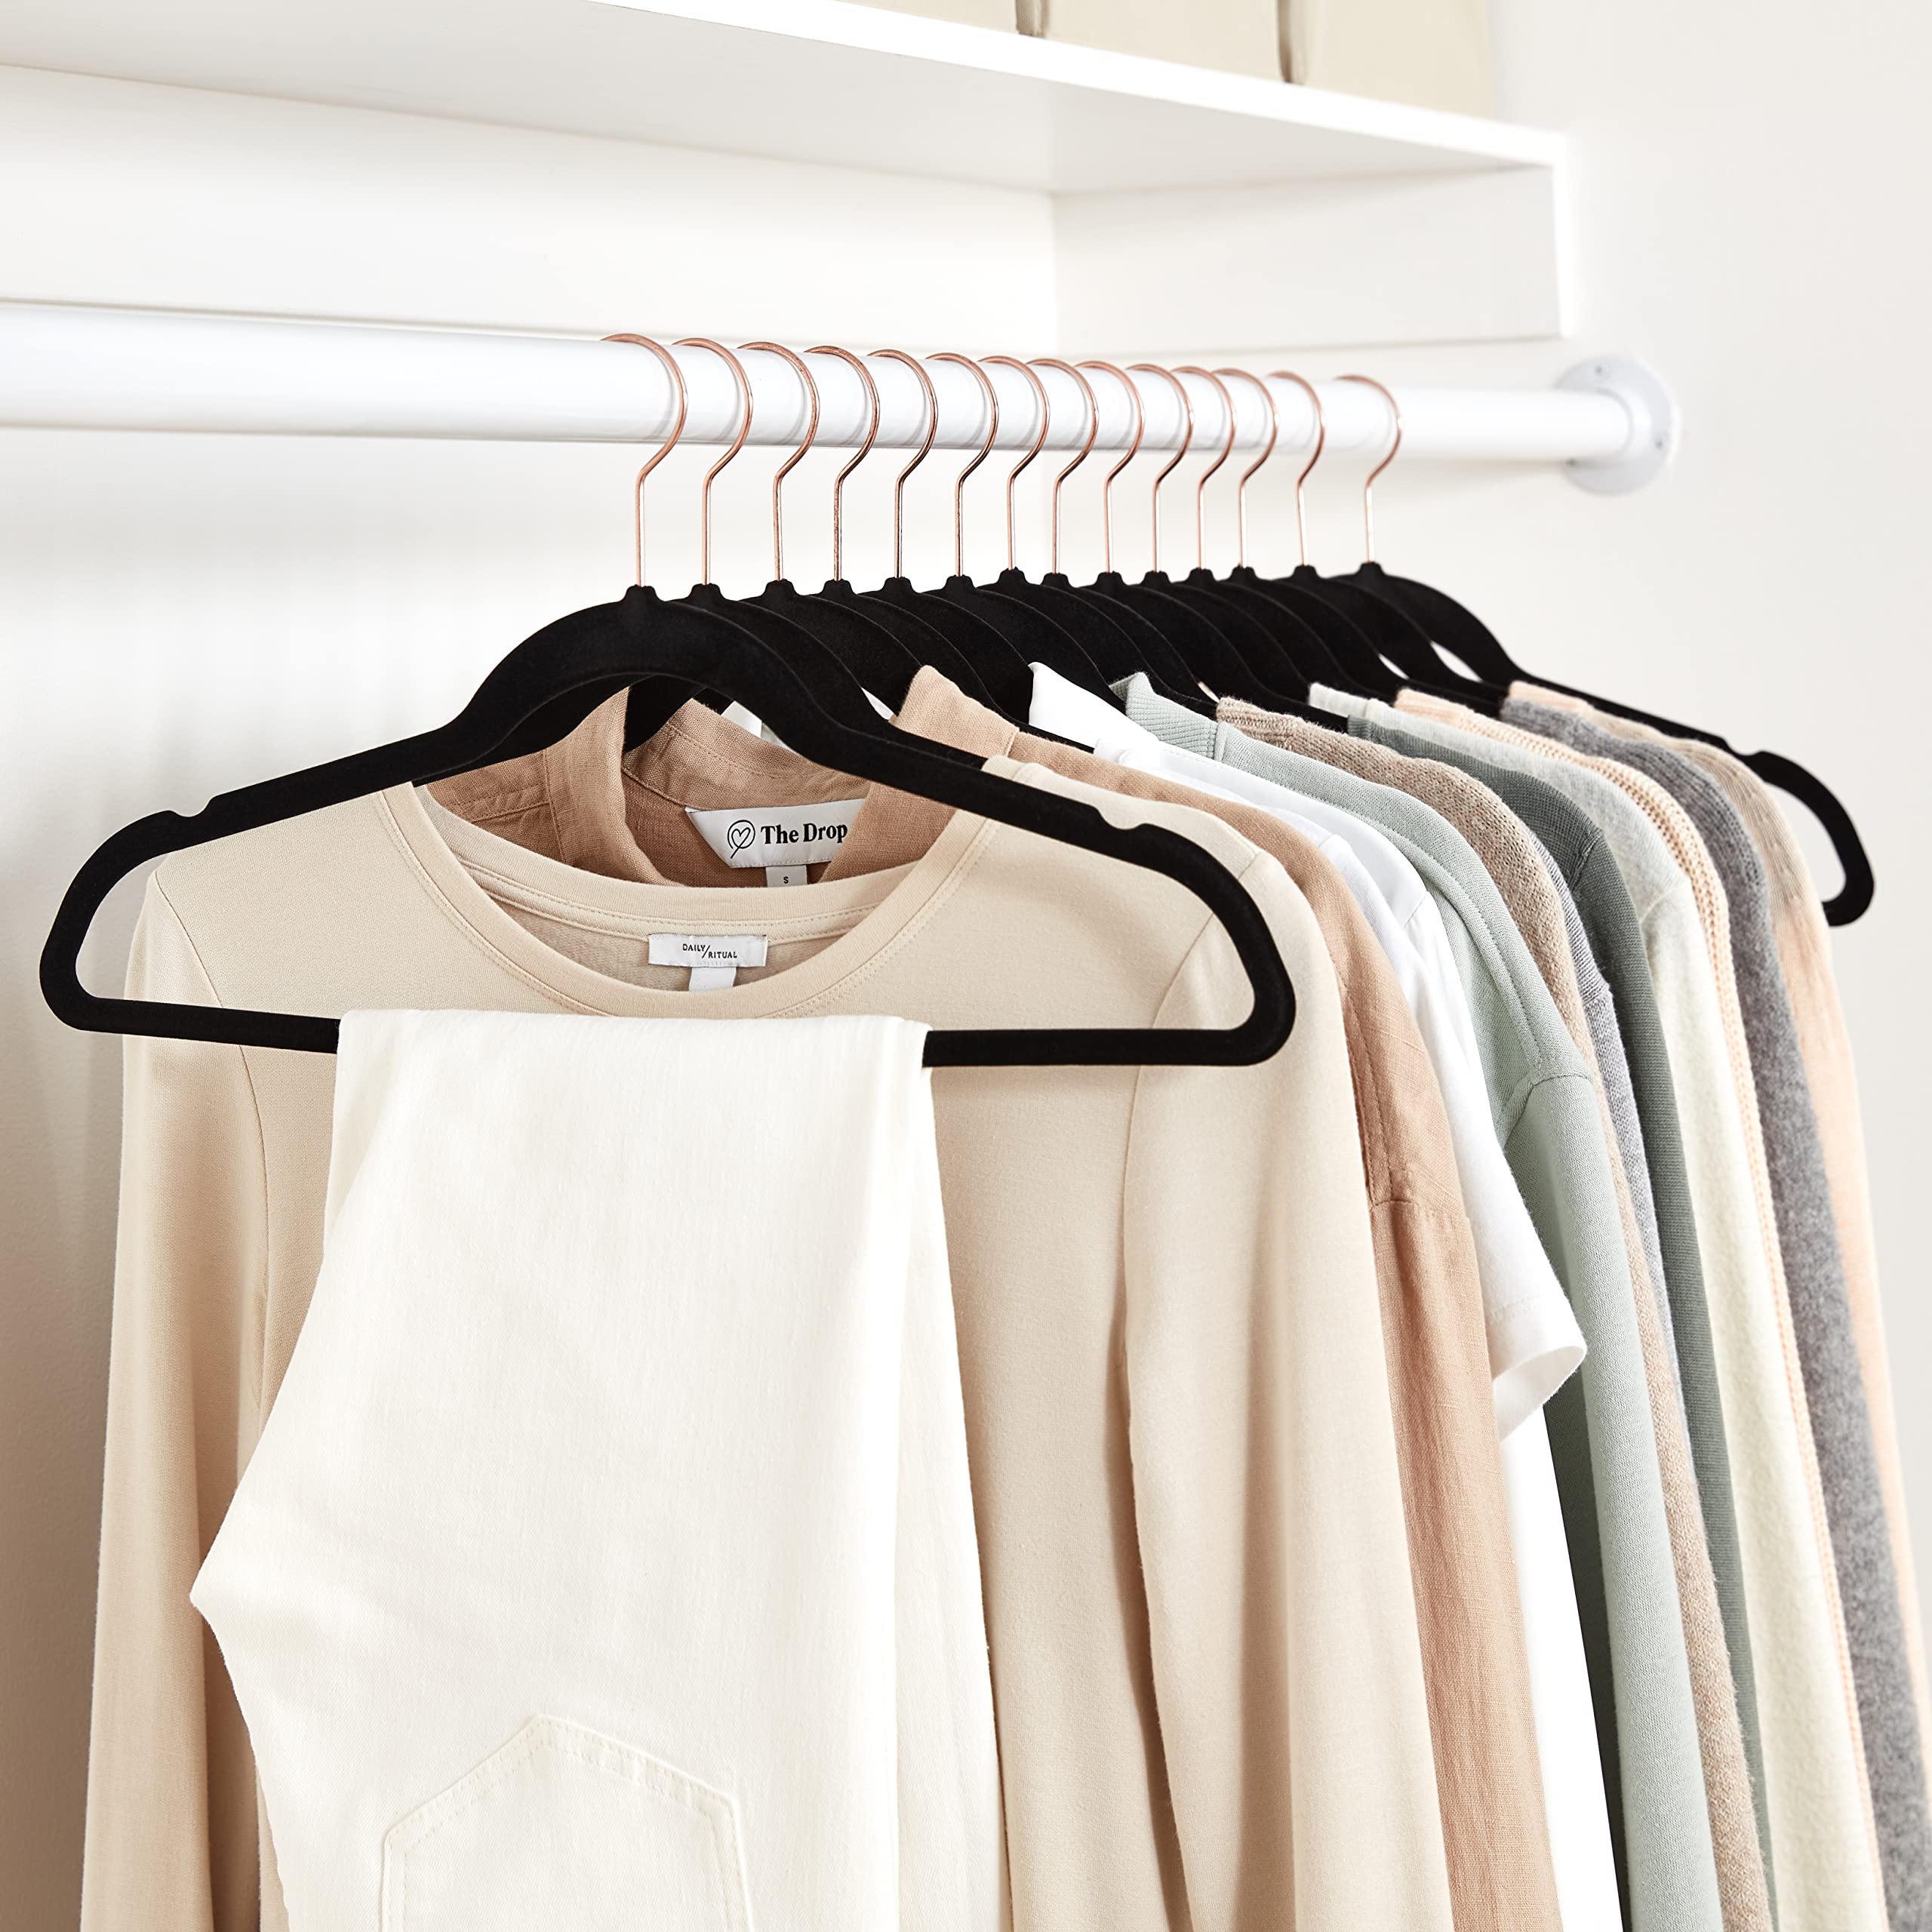 Black Velvet Hangers 60 Pack, Premium Clothes Hangers Non-Slip